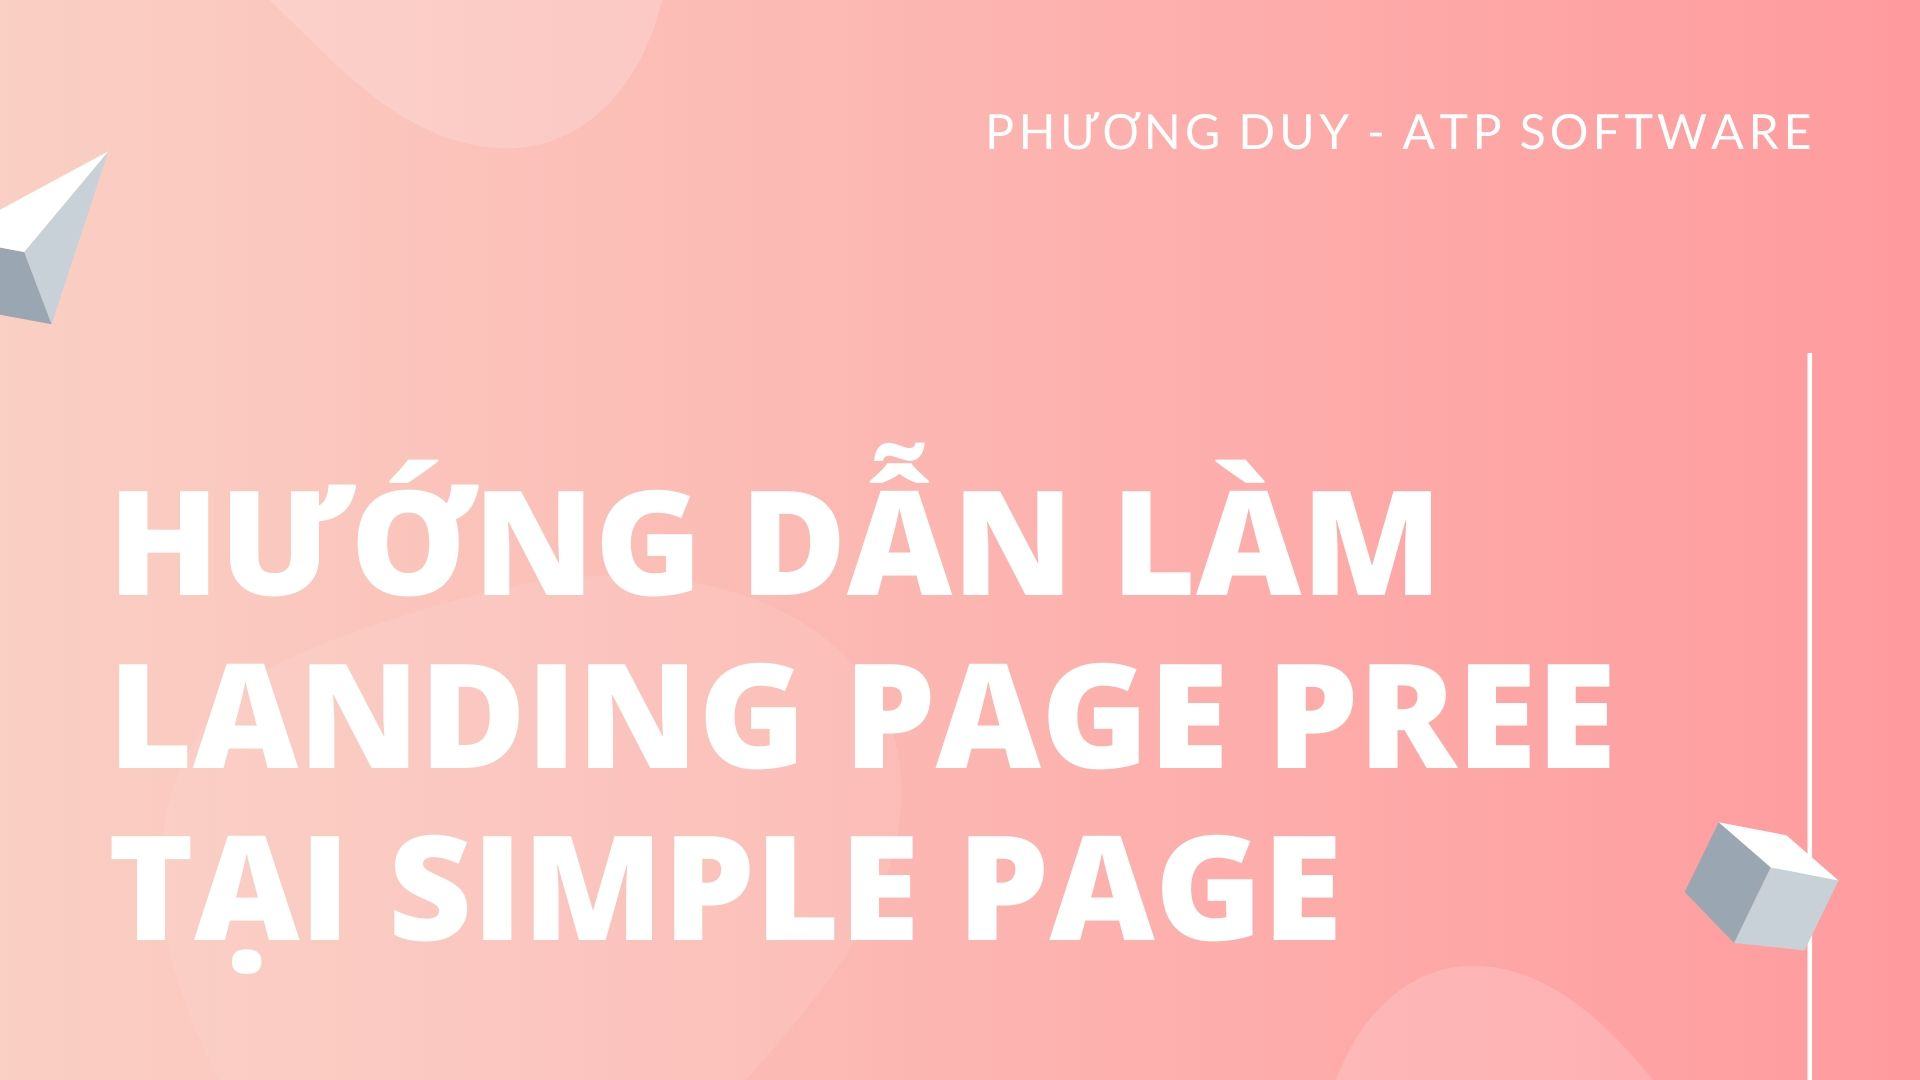 Cách làm Landing Page Pree